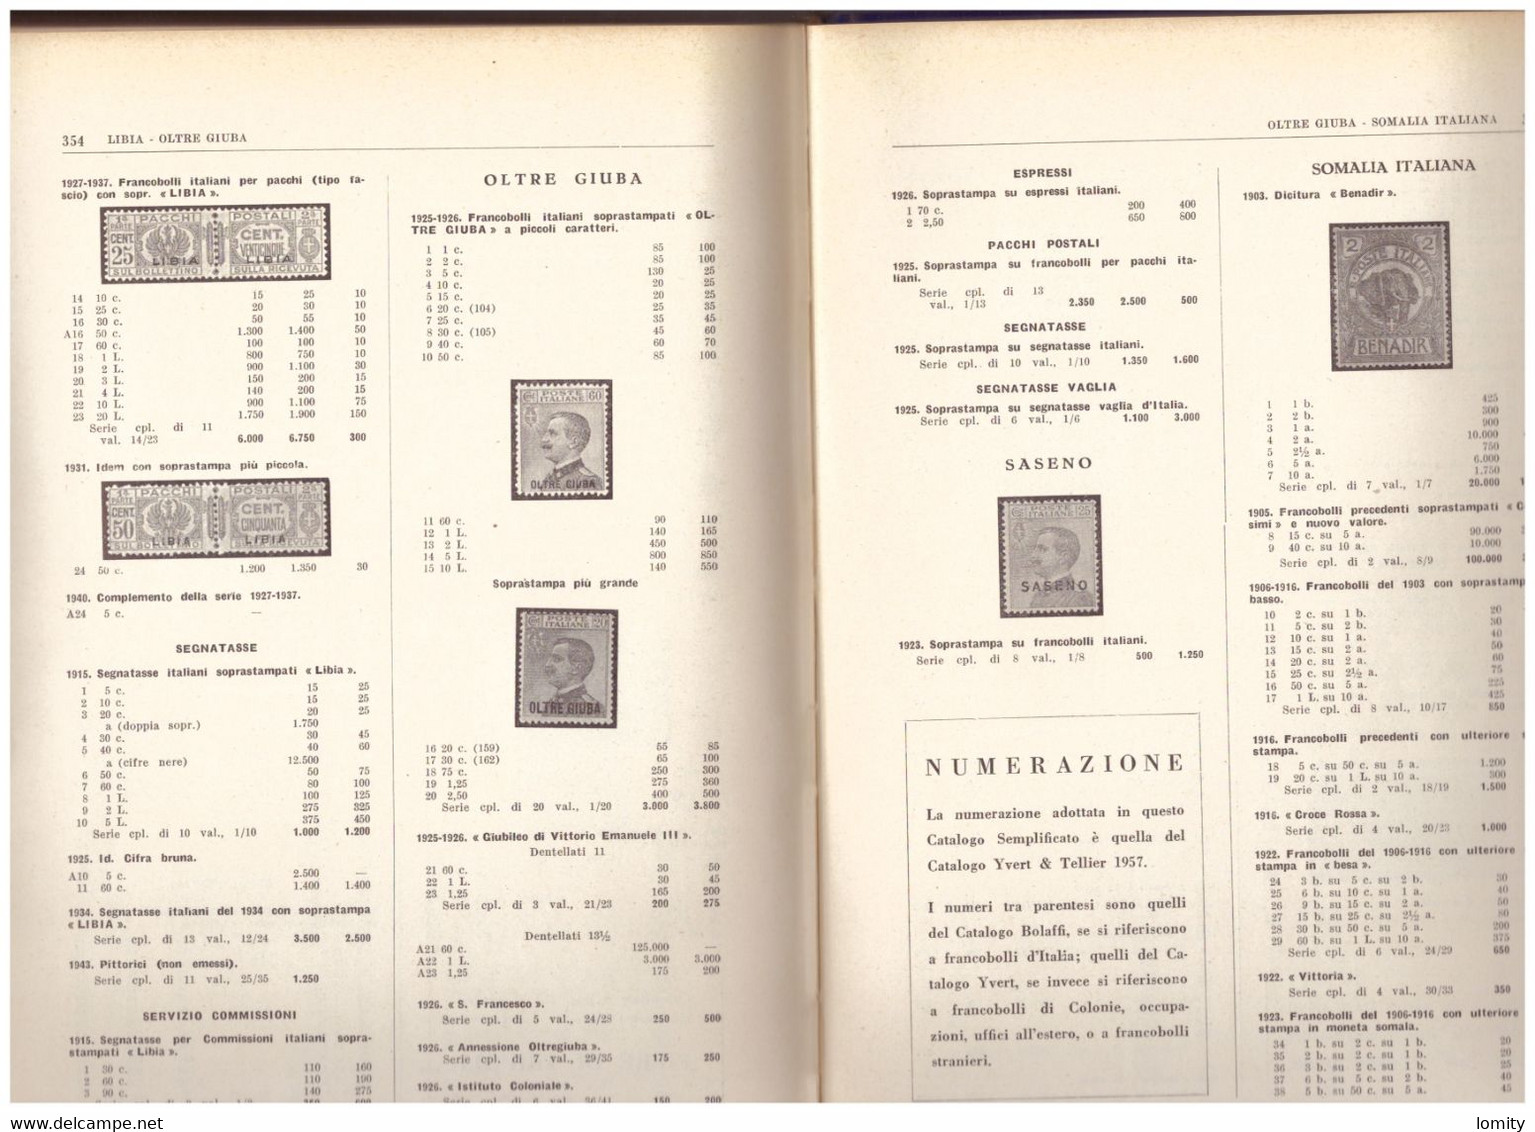 Catalogue Italie Bolaffi 1957 Catalogo Dei Francobelli Italiani 372 Pages - Italie